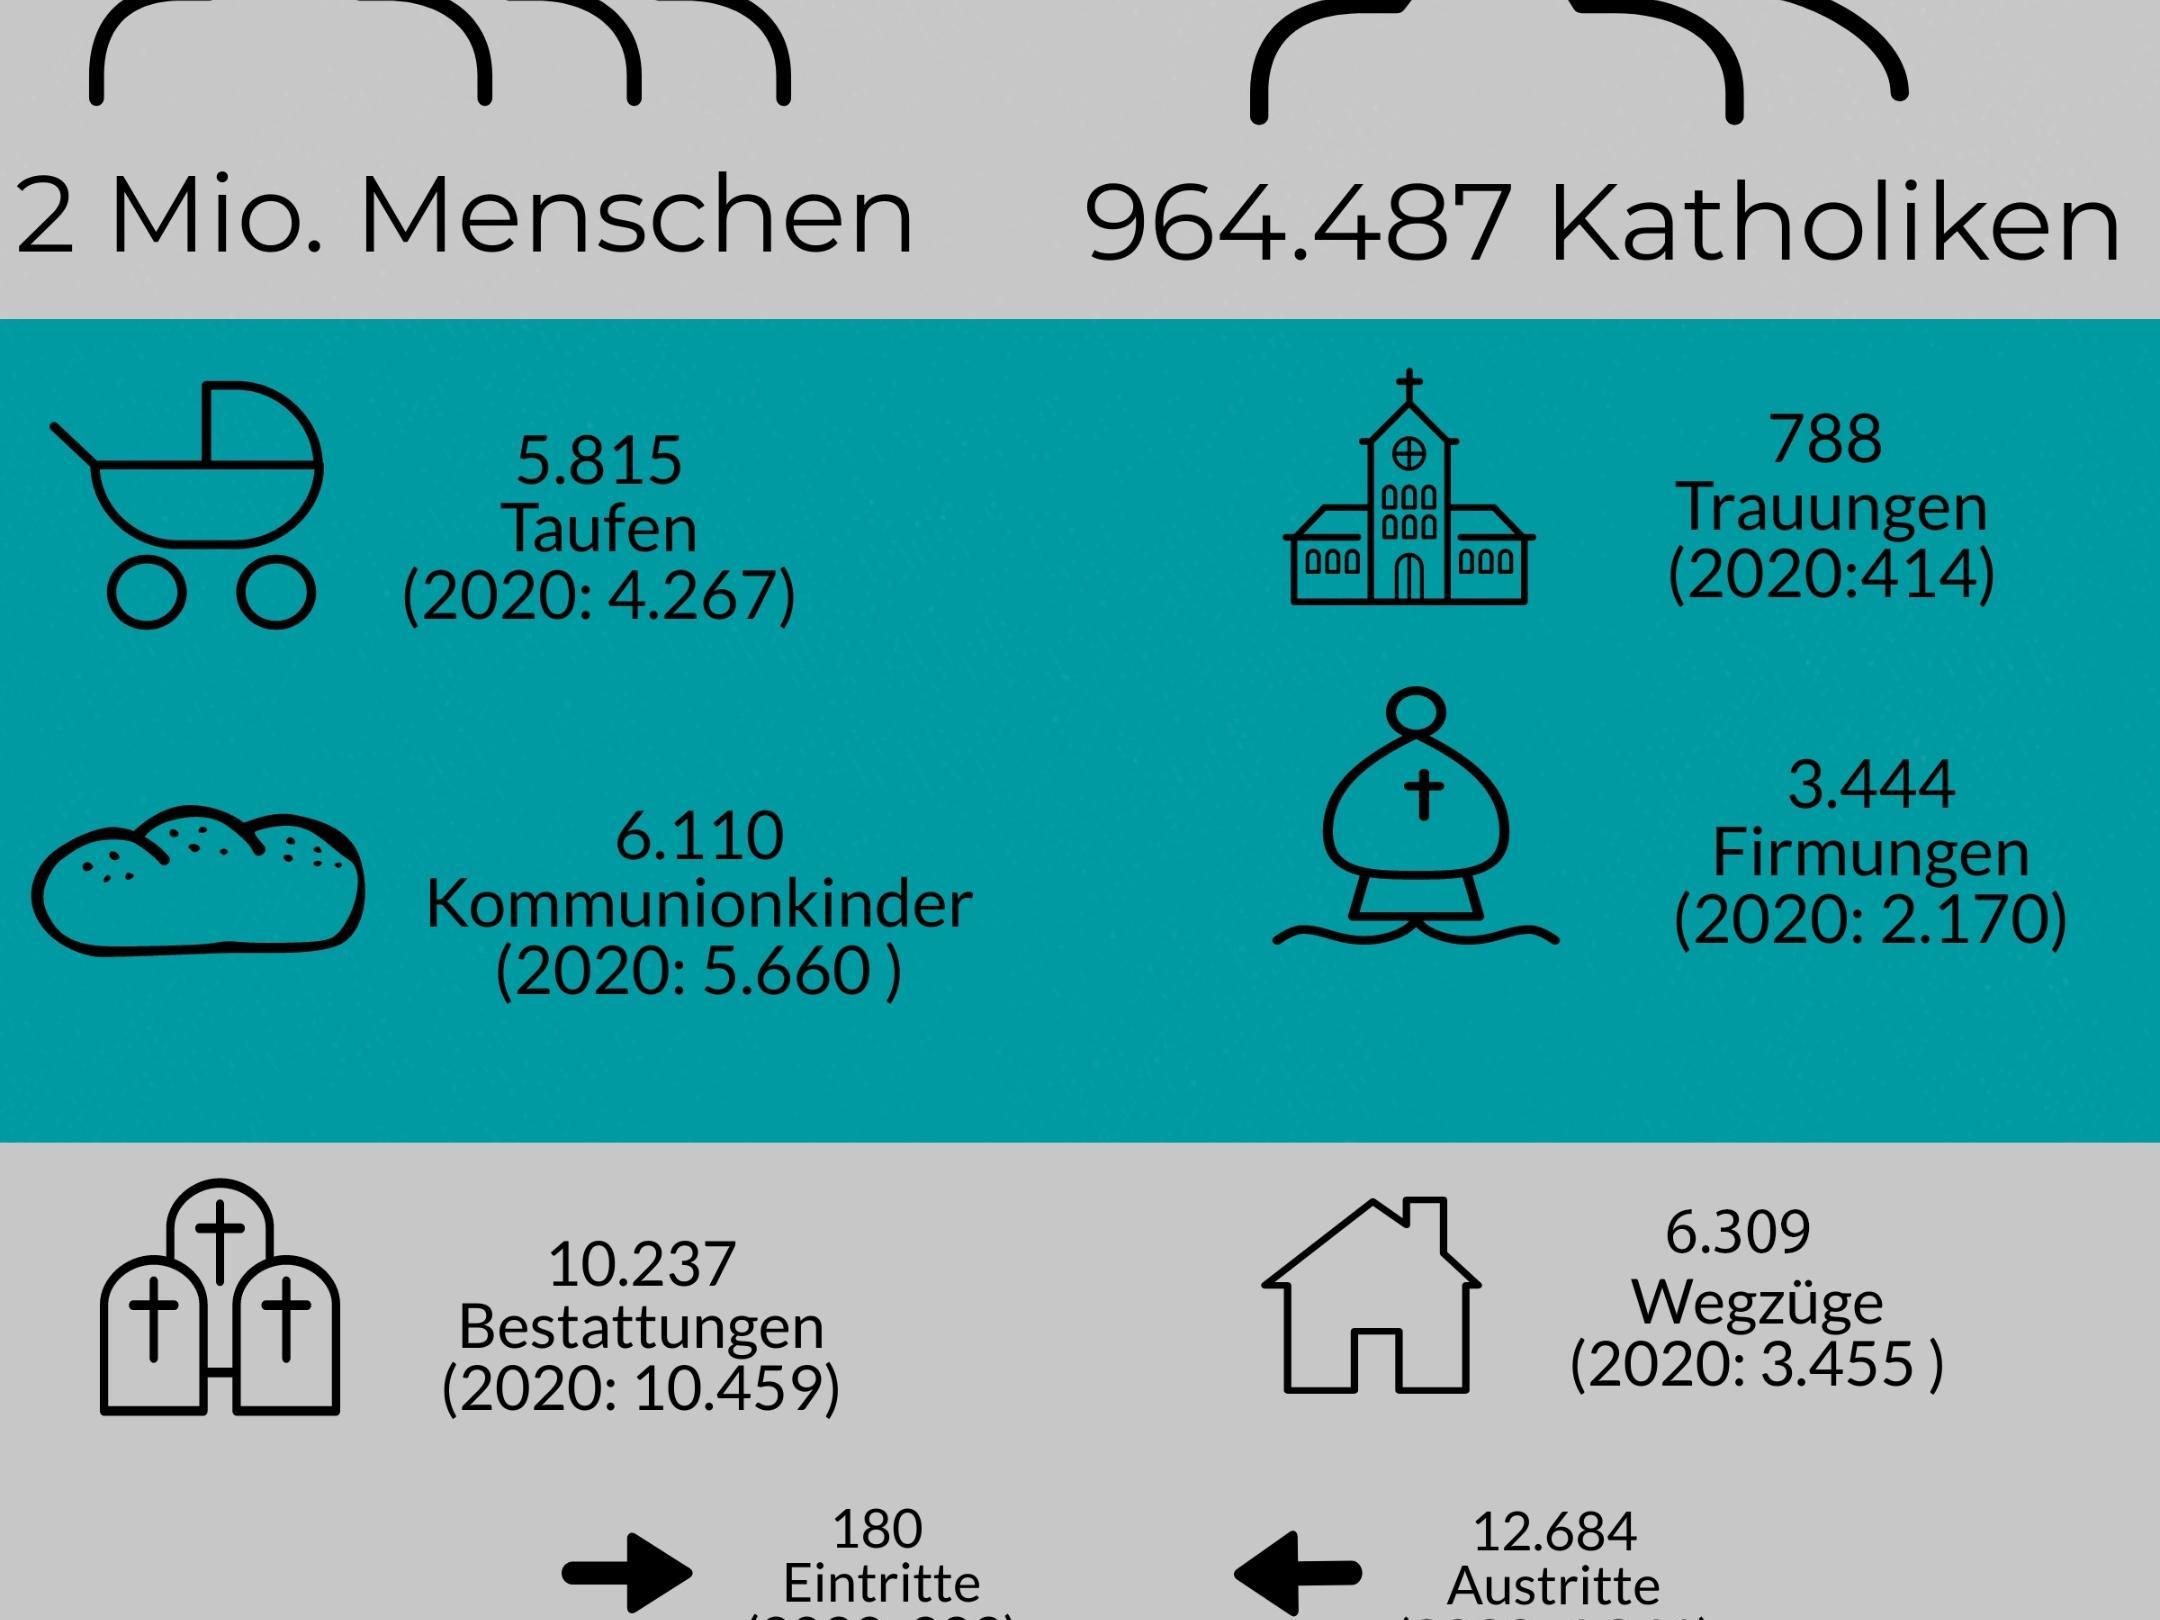 Kirchenstatistik Bistum Aachen